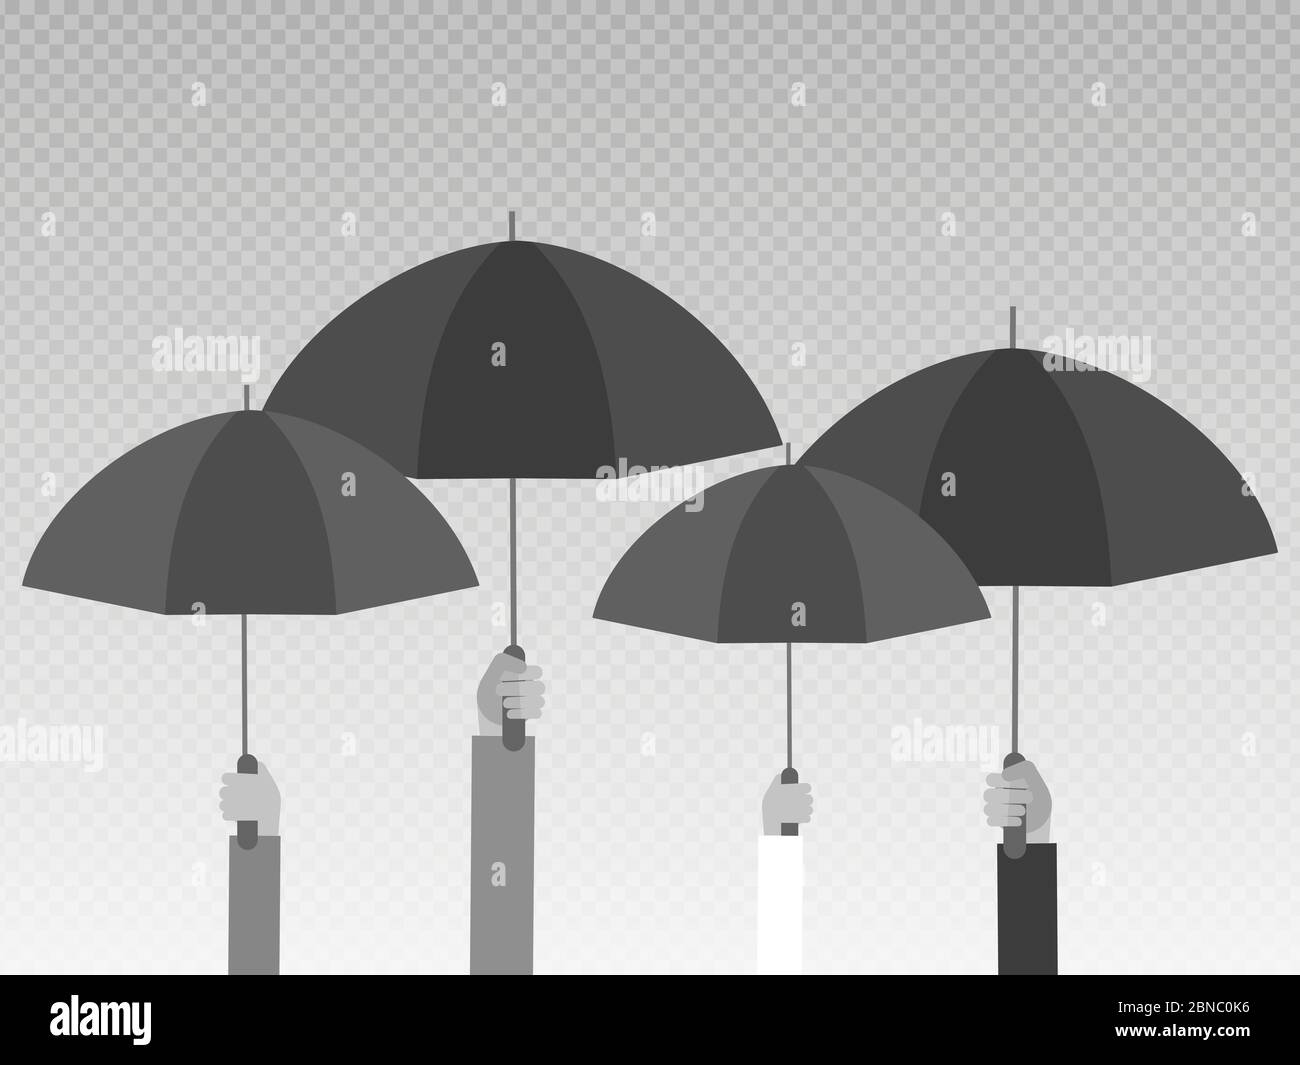 Hände halten schwarze Regenschirme isoliert auf transparentem Hintergrund. Vektorgrafik Stock Vektor